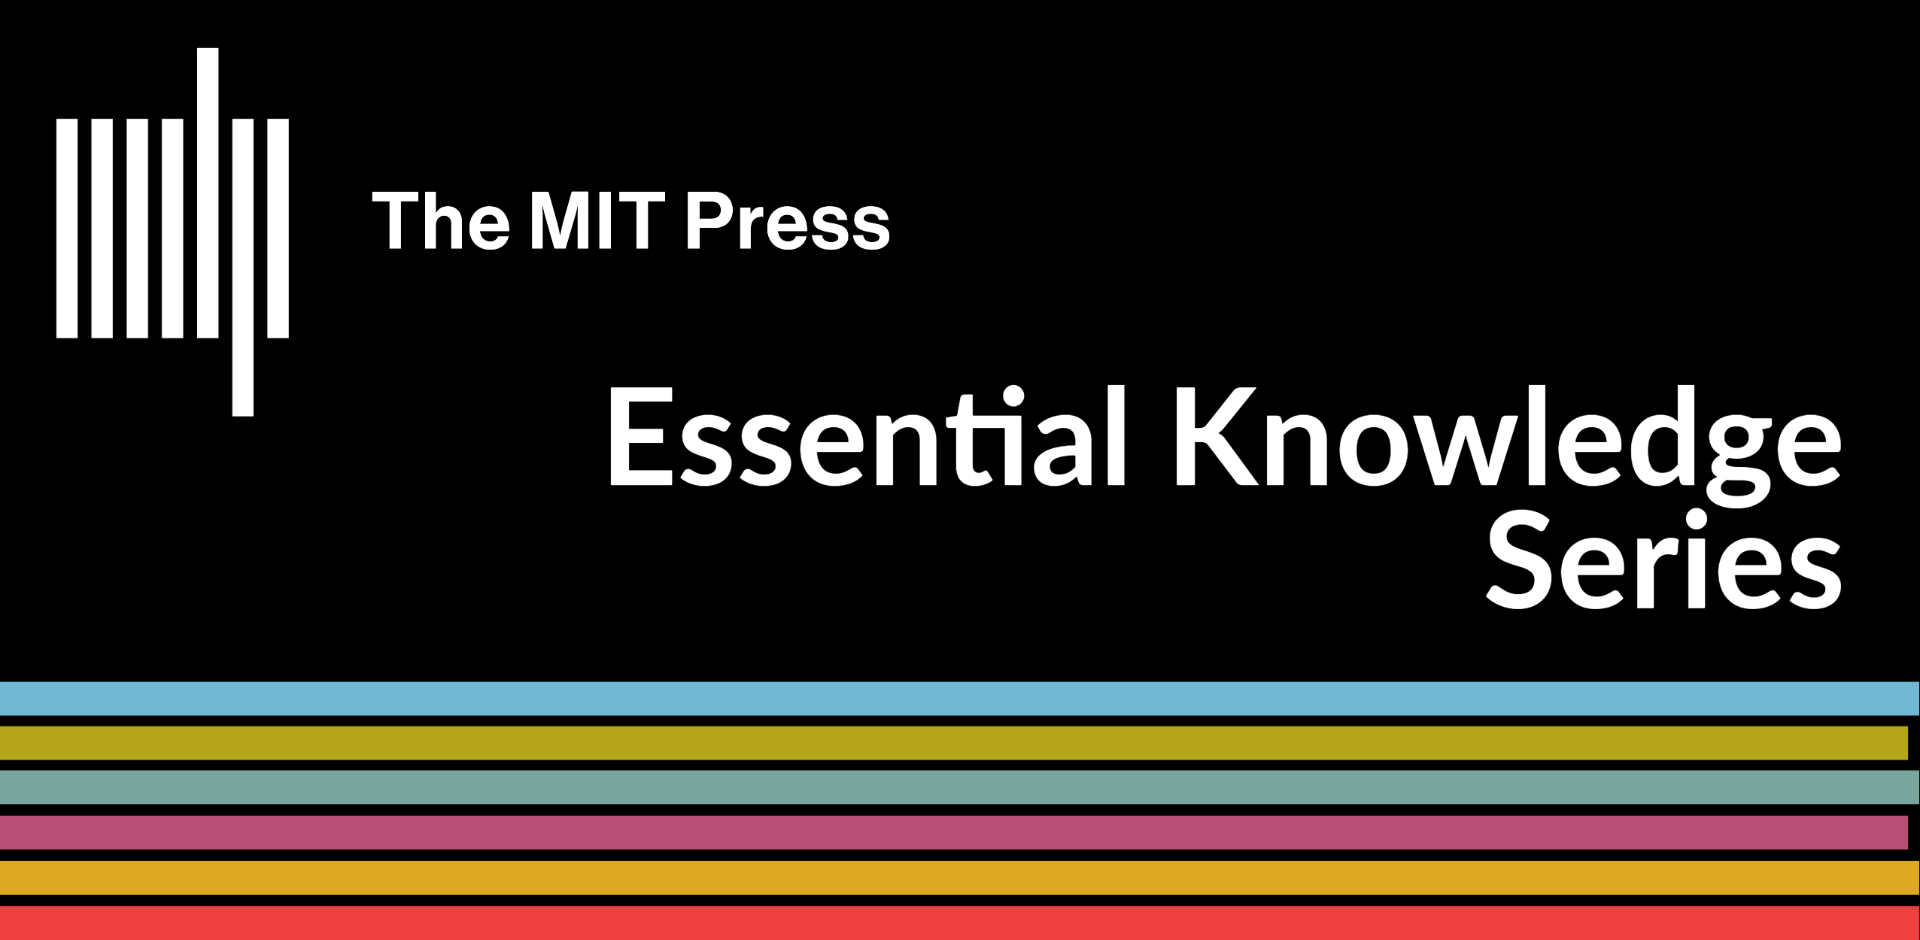 Essential Knowledge Series